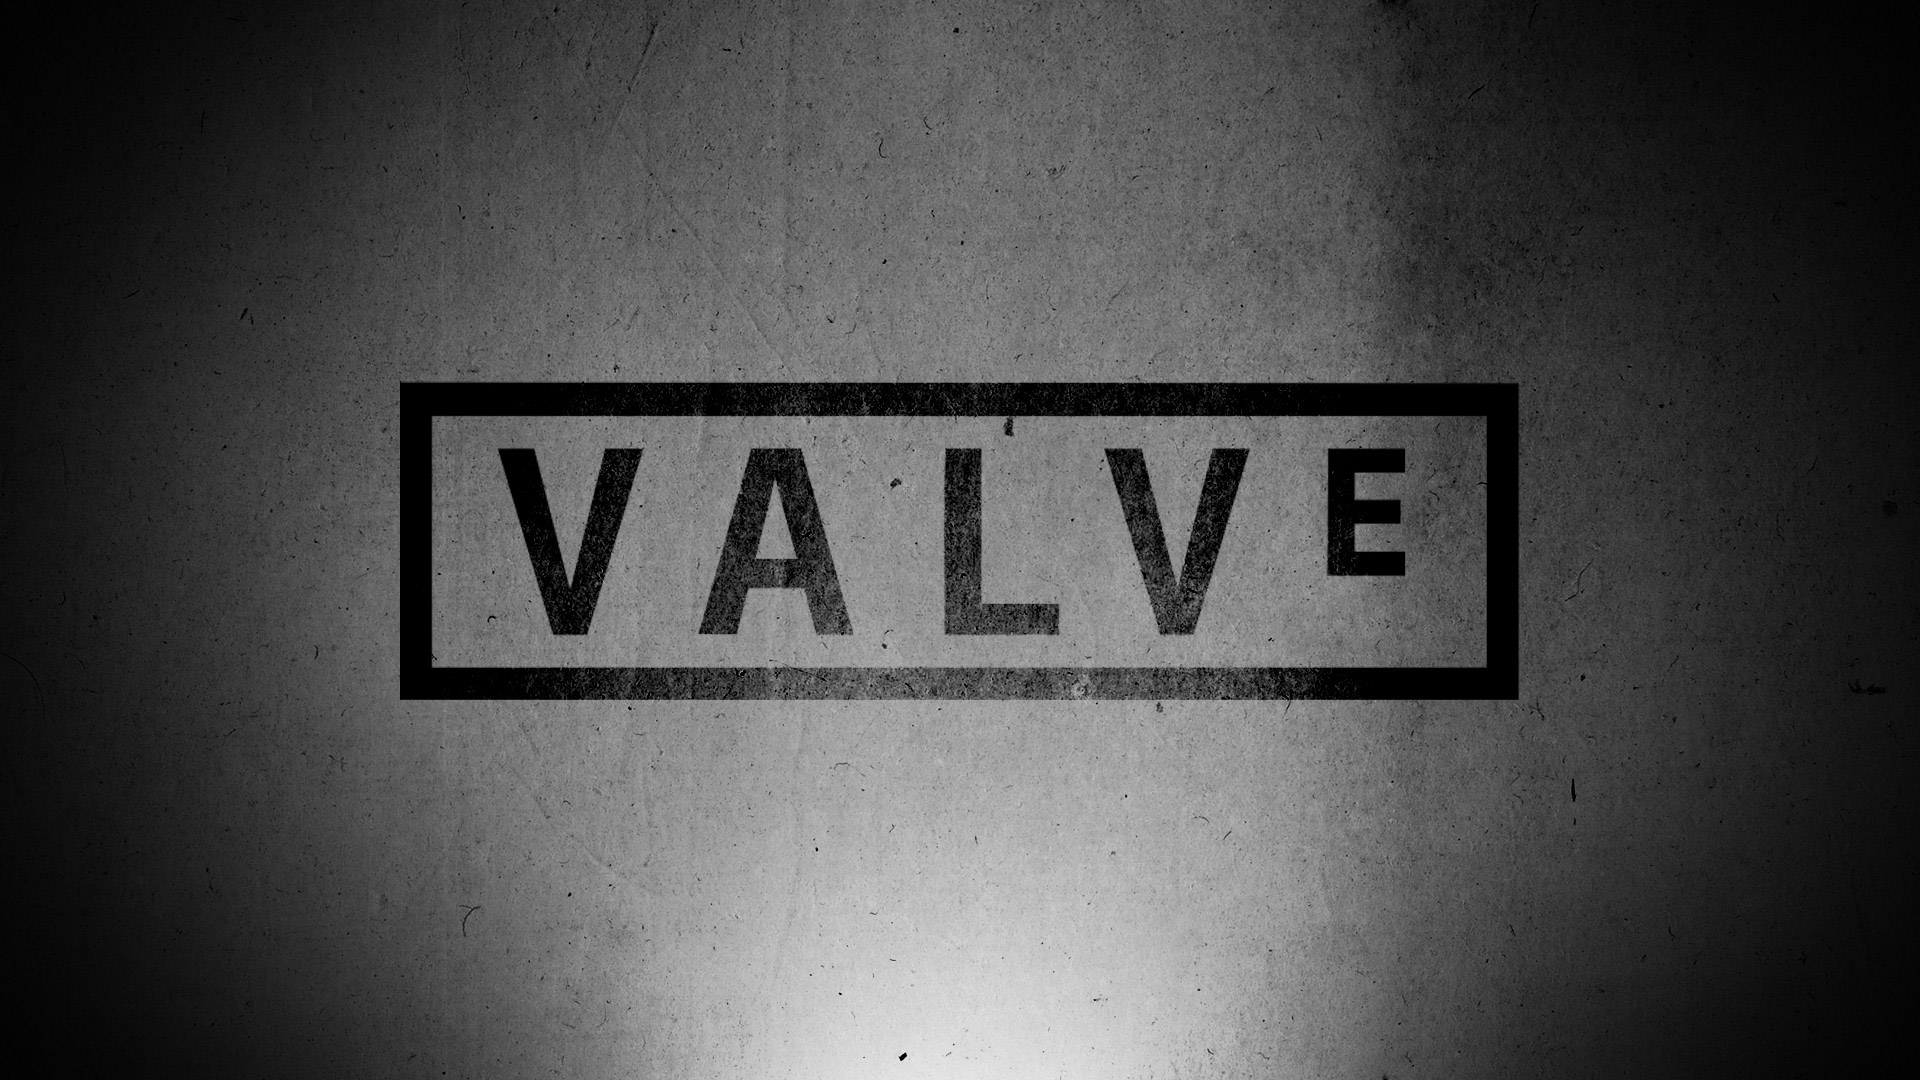 Valve HD Wallpaper FullHDwpp Full